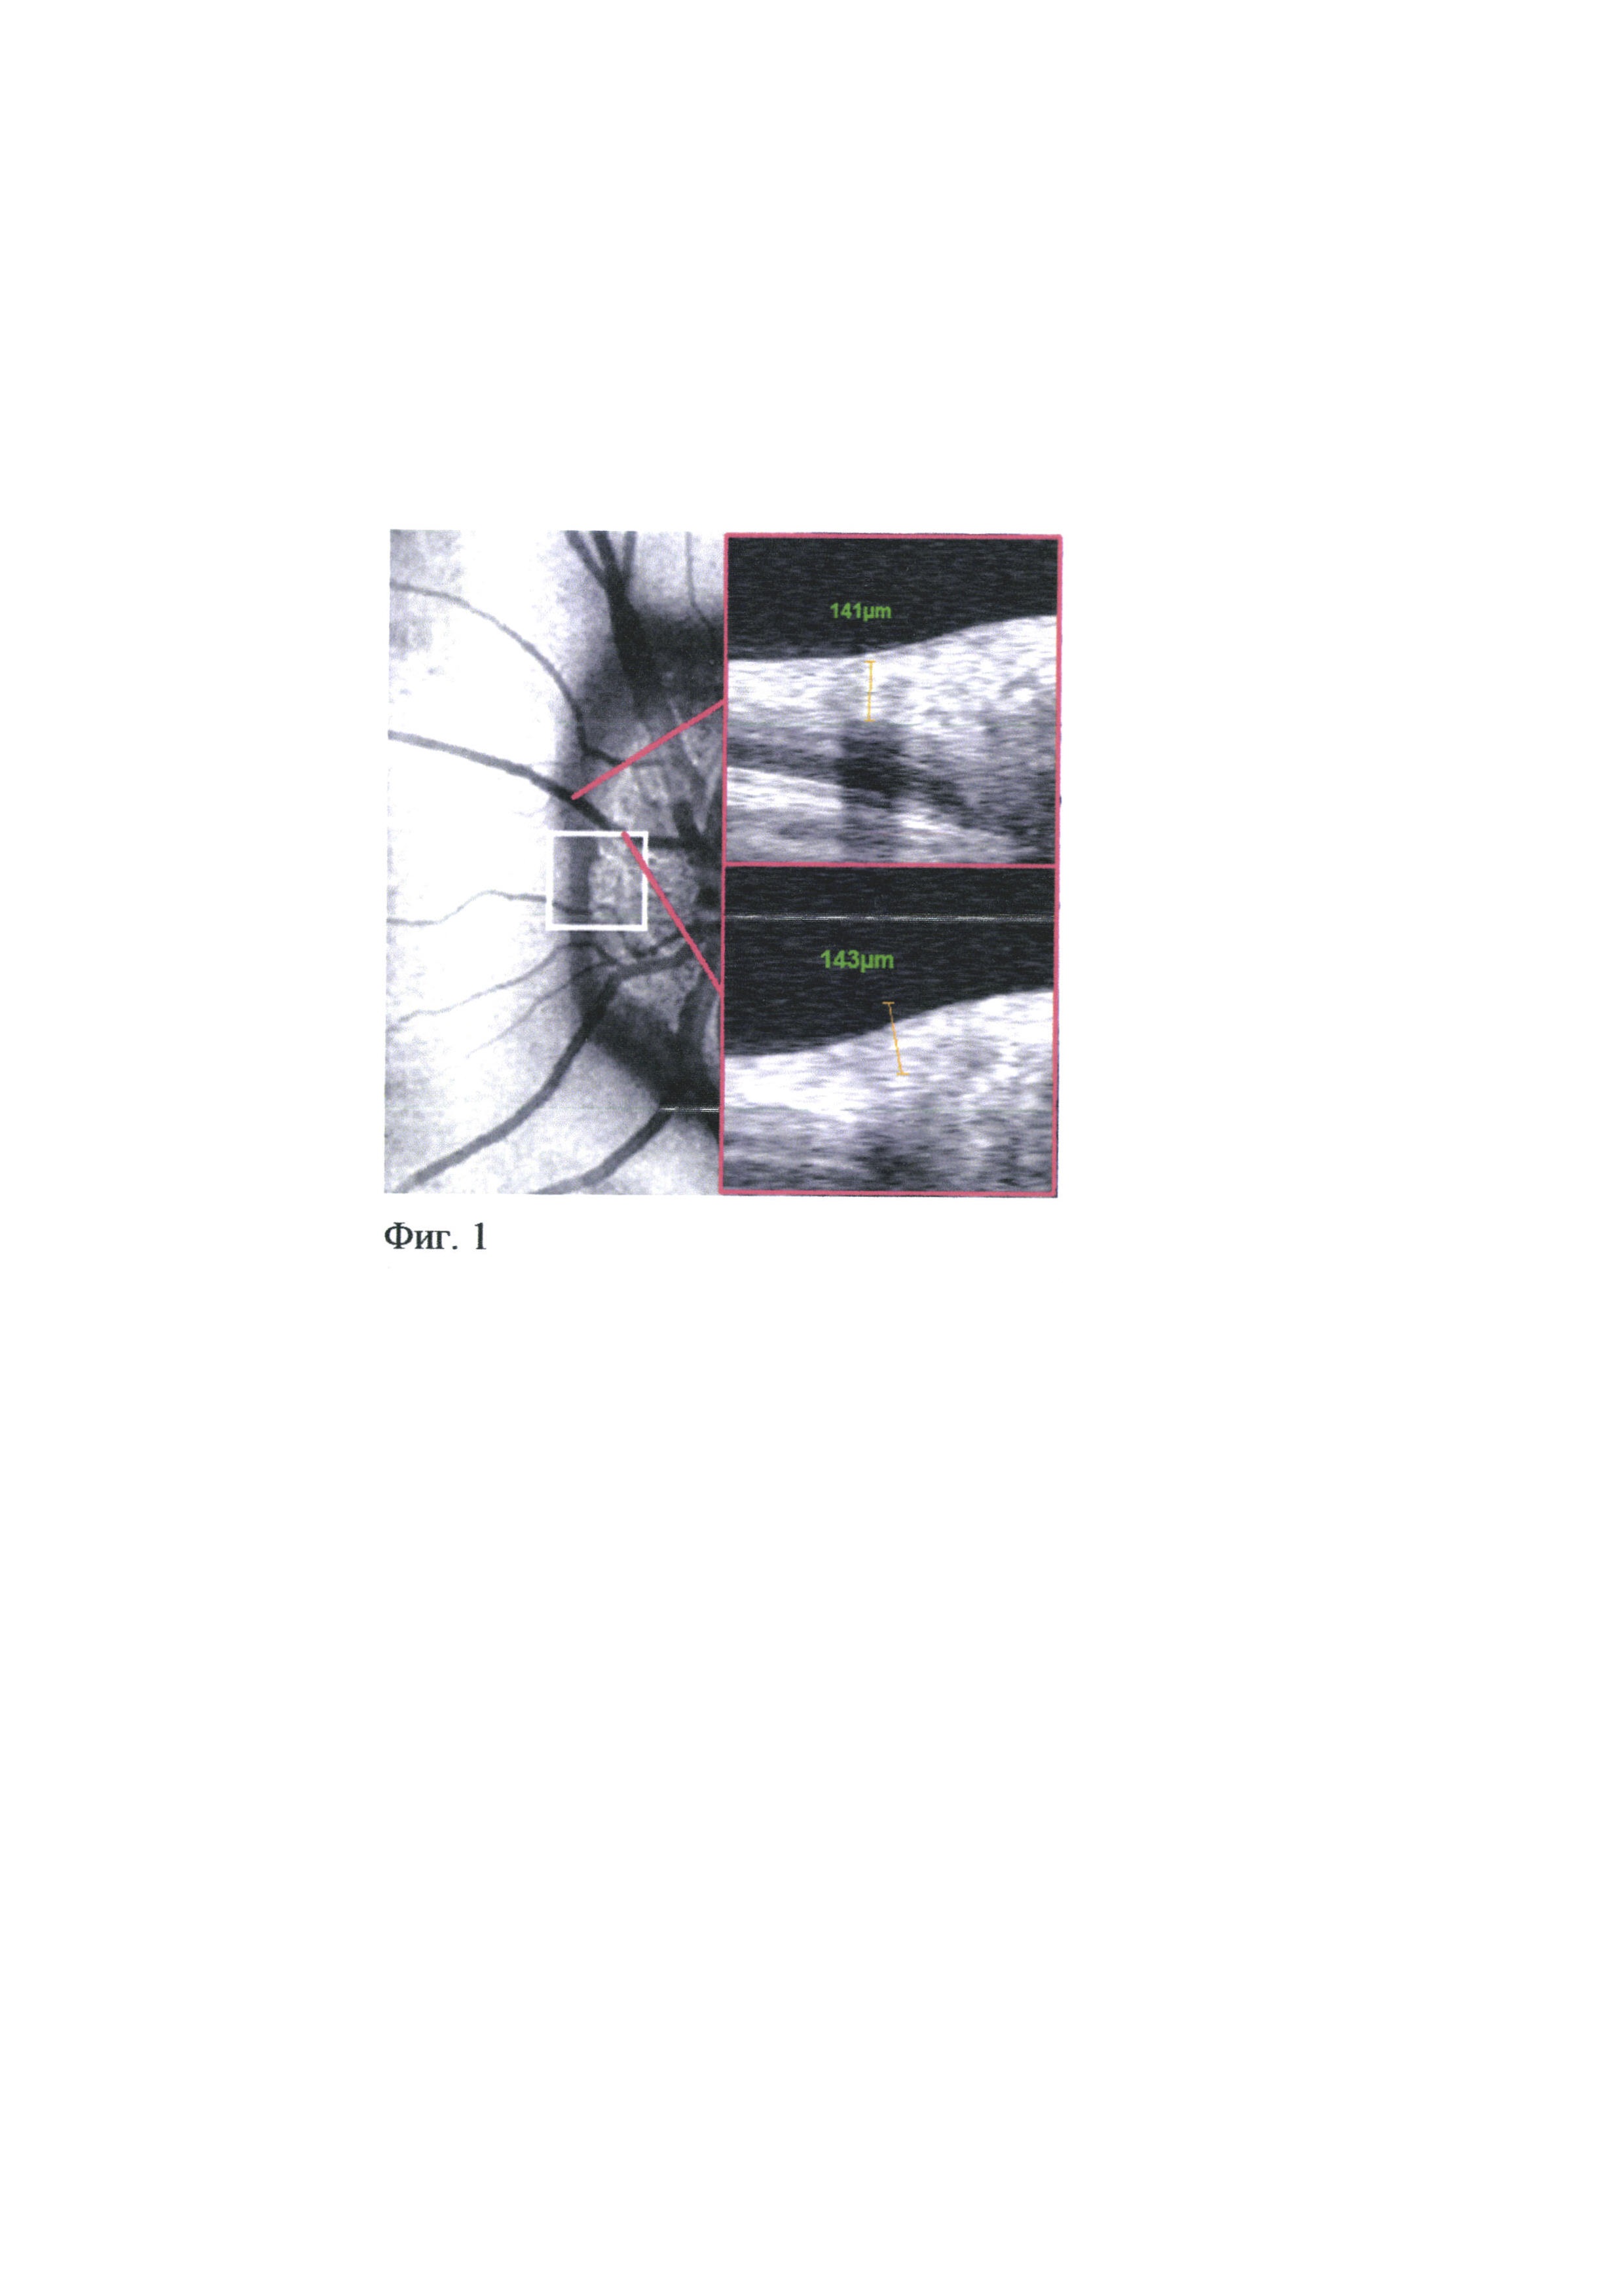 Способ определения структурно-функциональных изменений сетчатки и зрительного нерва при друзах диска зрительного нерва